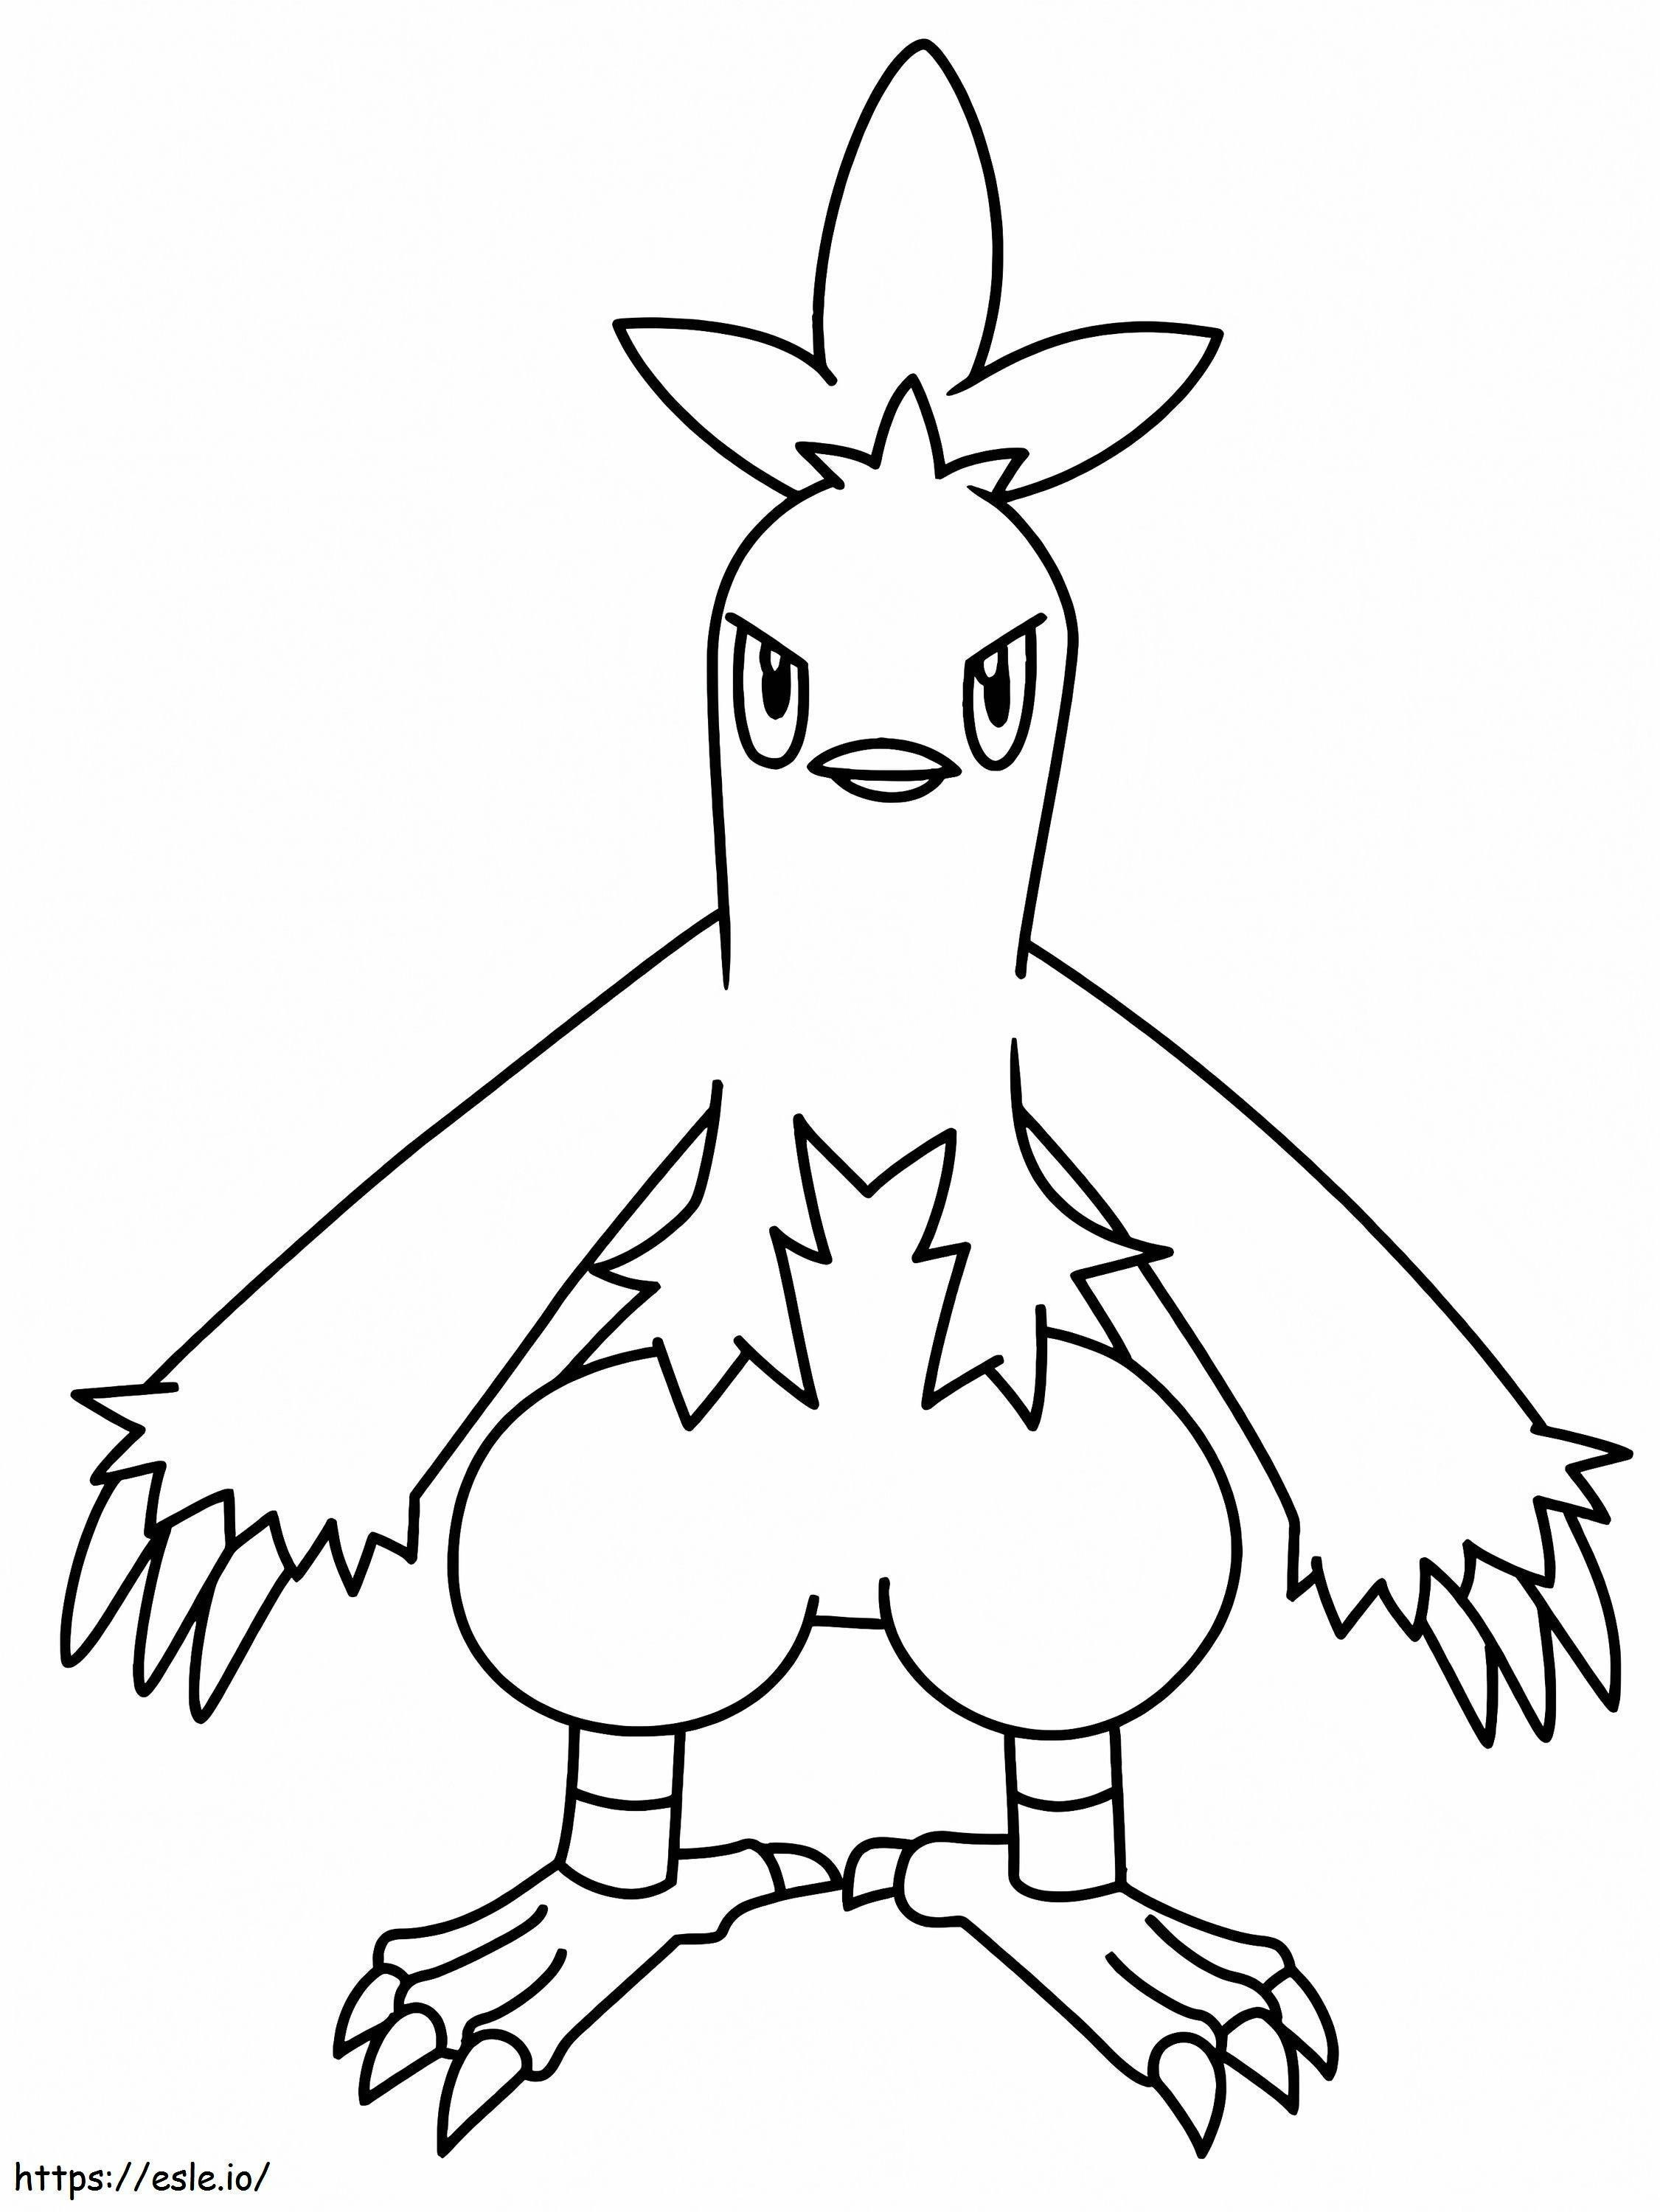 Combusken Gen 3 Pokémon ausmalbilder